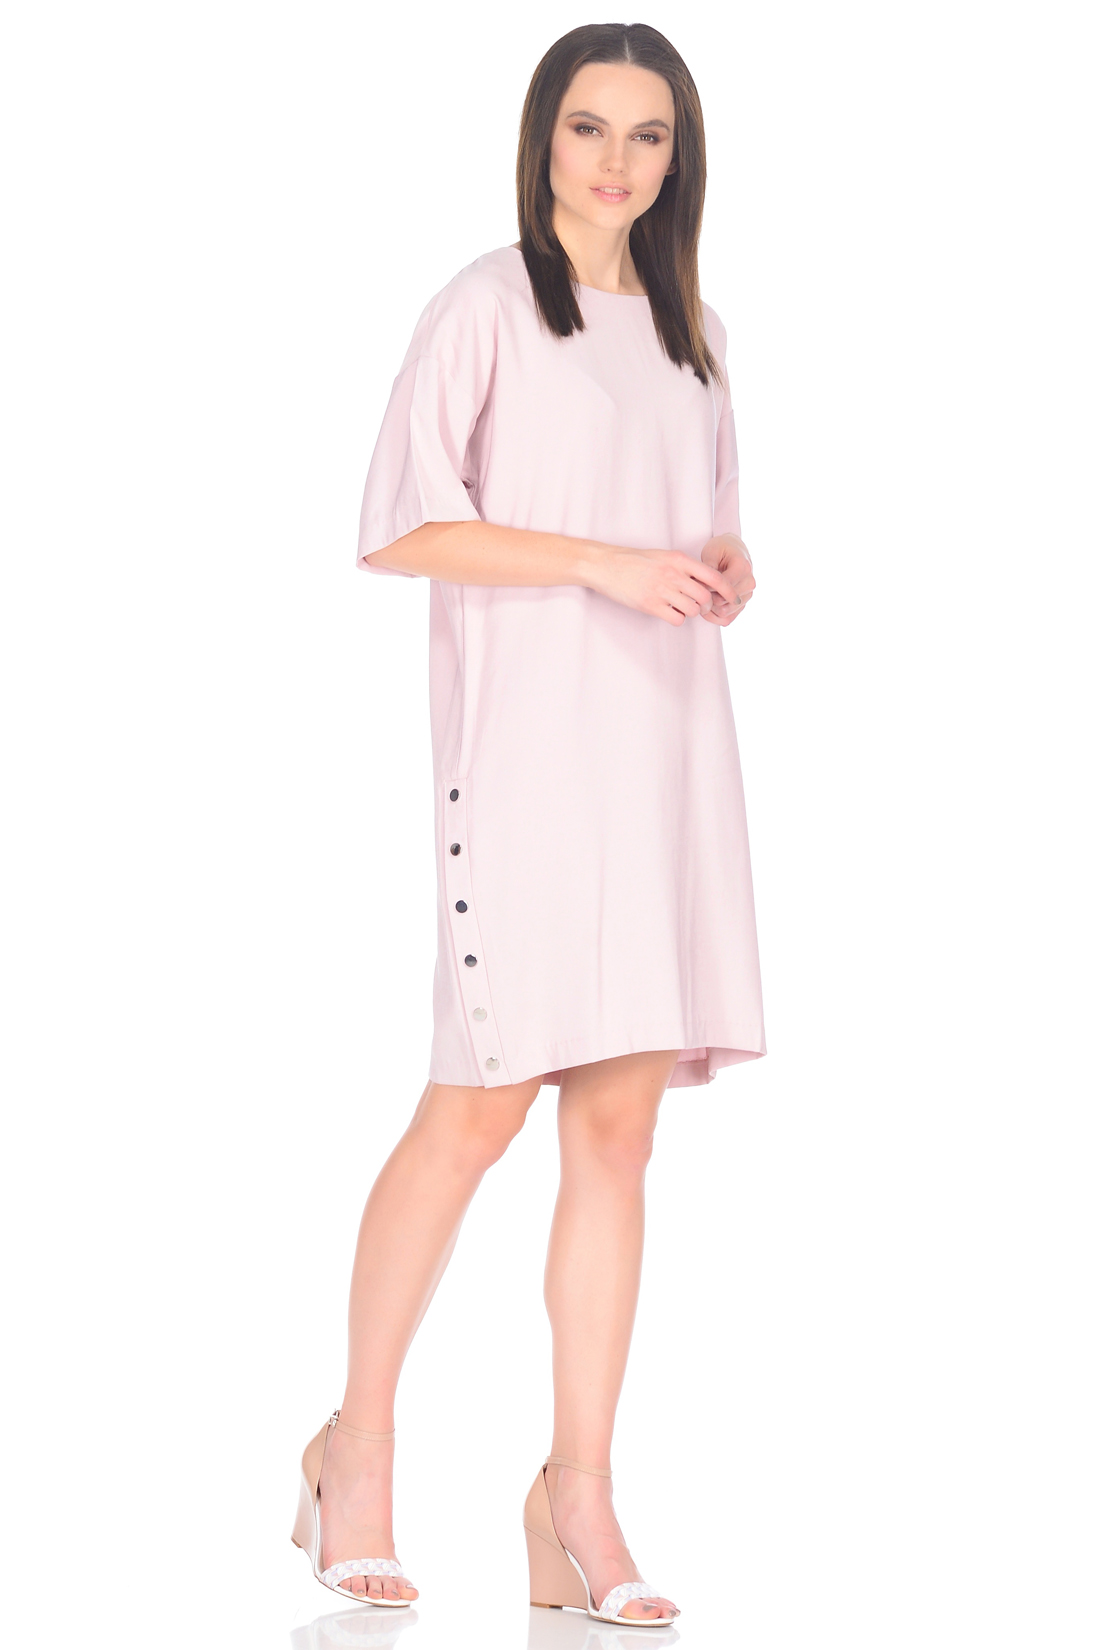 Свободное платье с кнопками (арт. baon B458011), размер XXL, цвет розовый Свободное платье с кнопками (арт. baon B458011) - фото 1